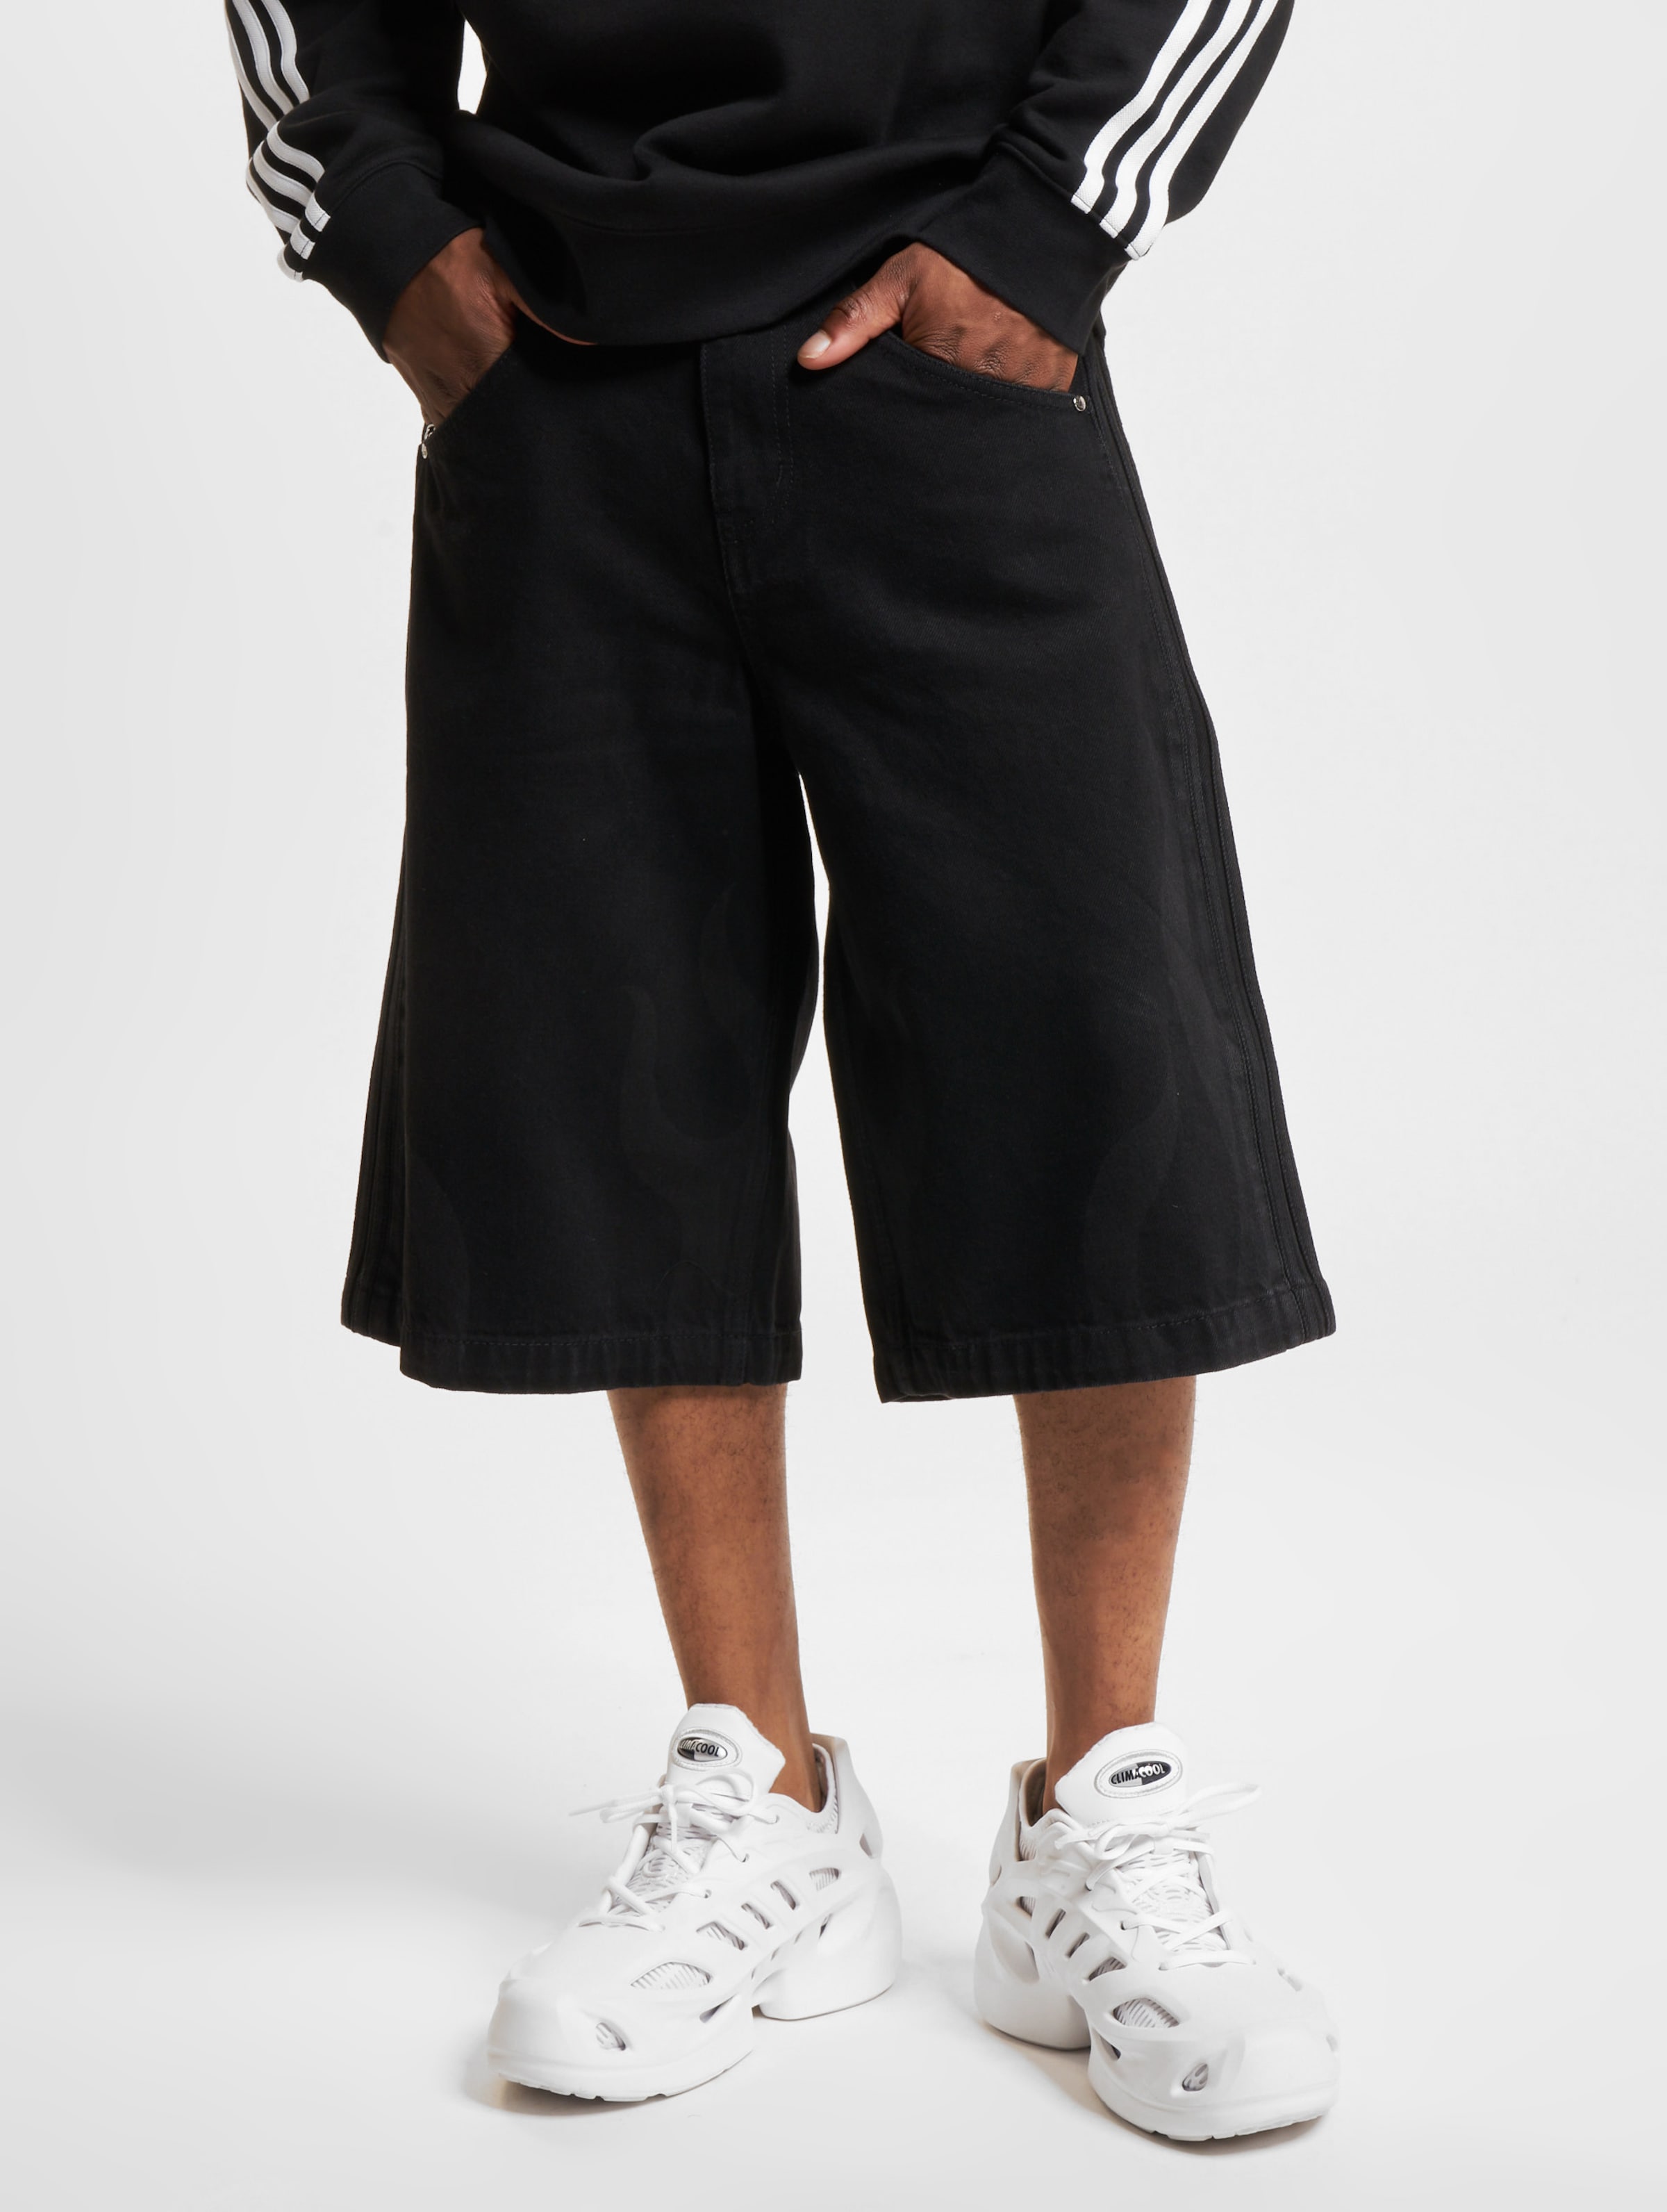 adidas Originals Flames Shorts Männer,Unisex op kleur zwart, Maat 30